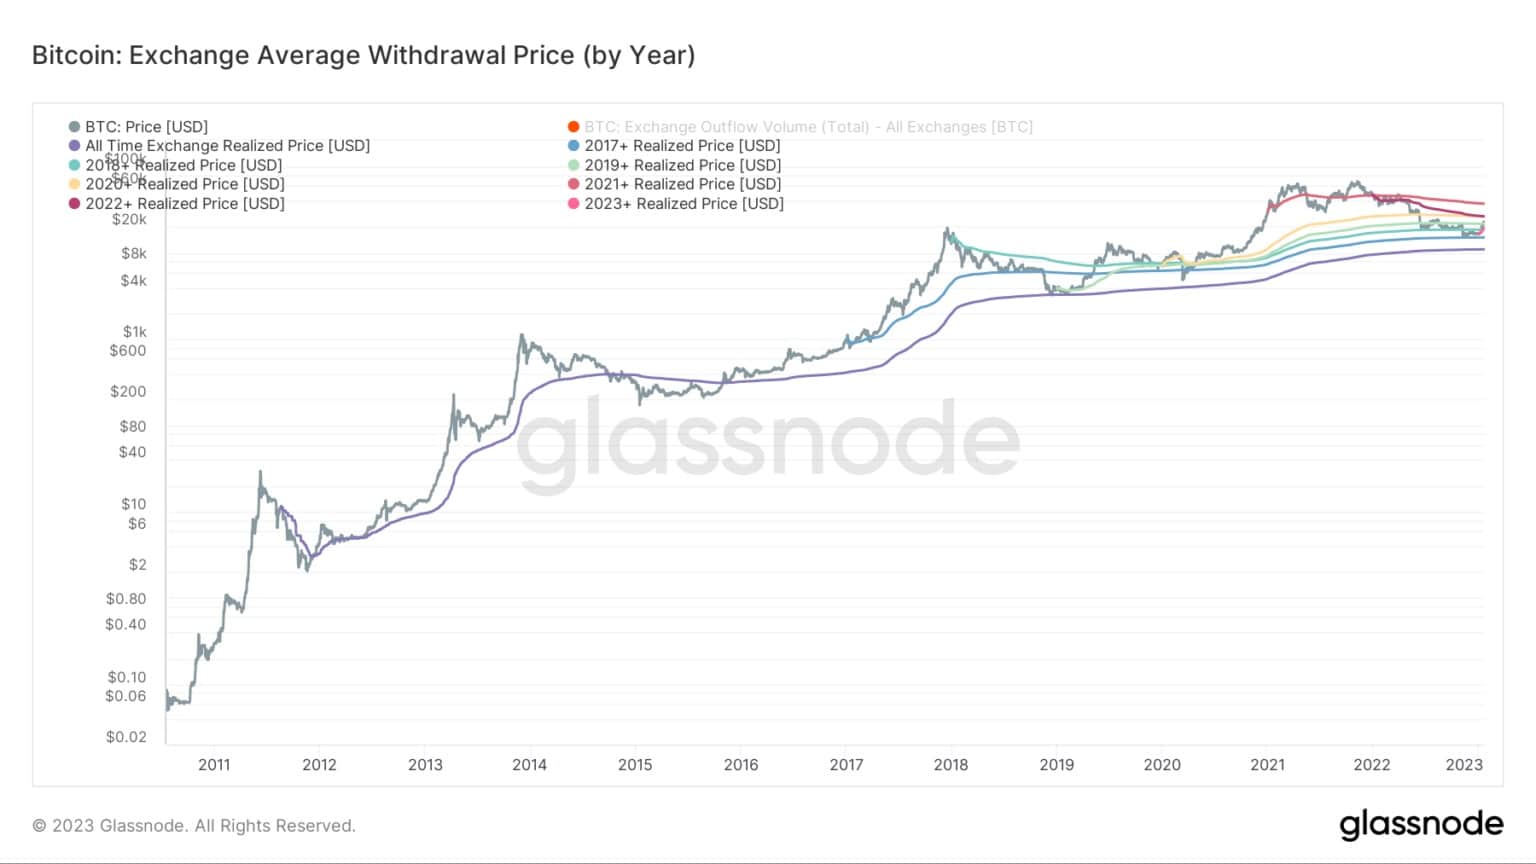 Grafik, die den durchschnittlichen Rücknahmepreis für Bitcoin nach Jahr zeigt (Quelle: Glassnode)